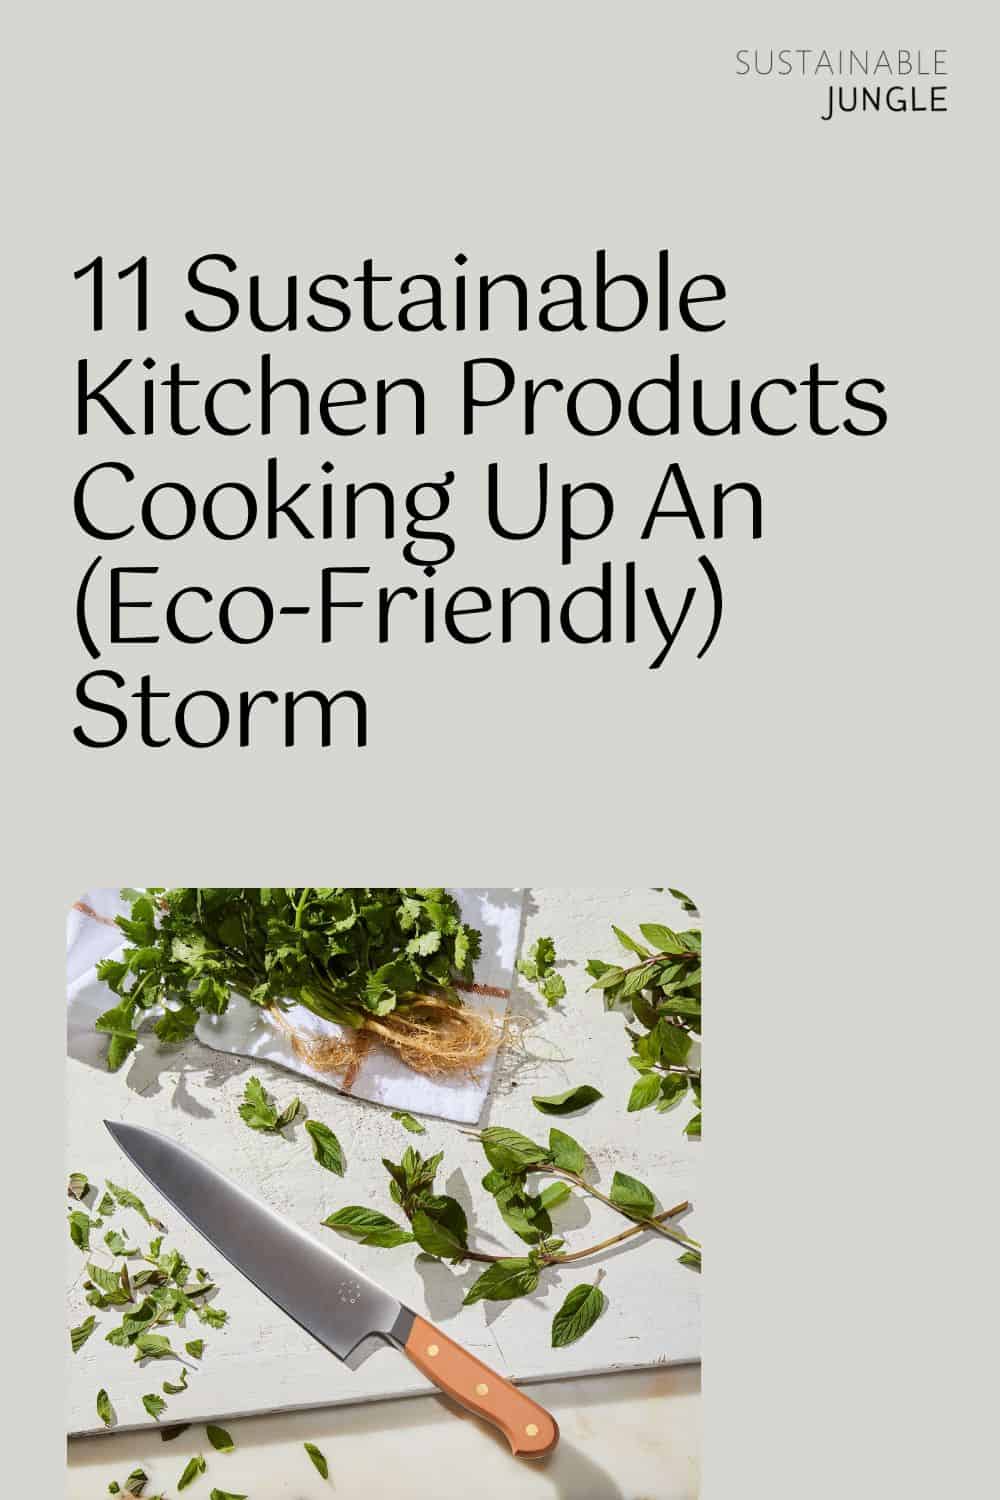 15 Sustainable Kitchen Products - Umbel Organics